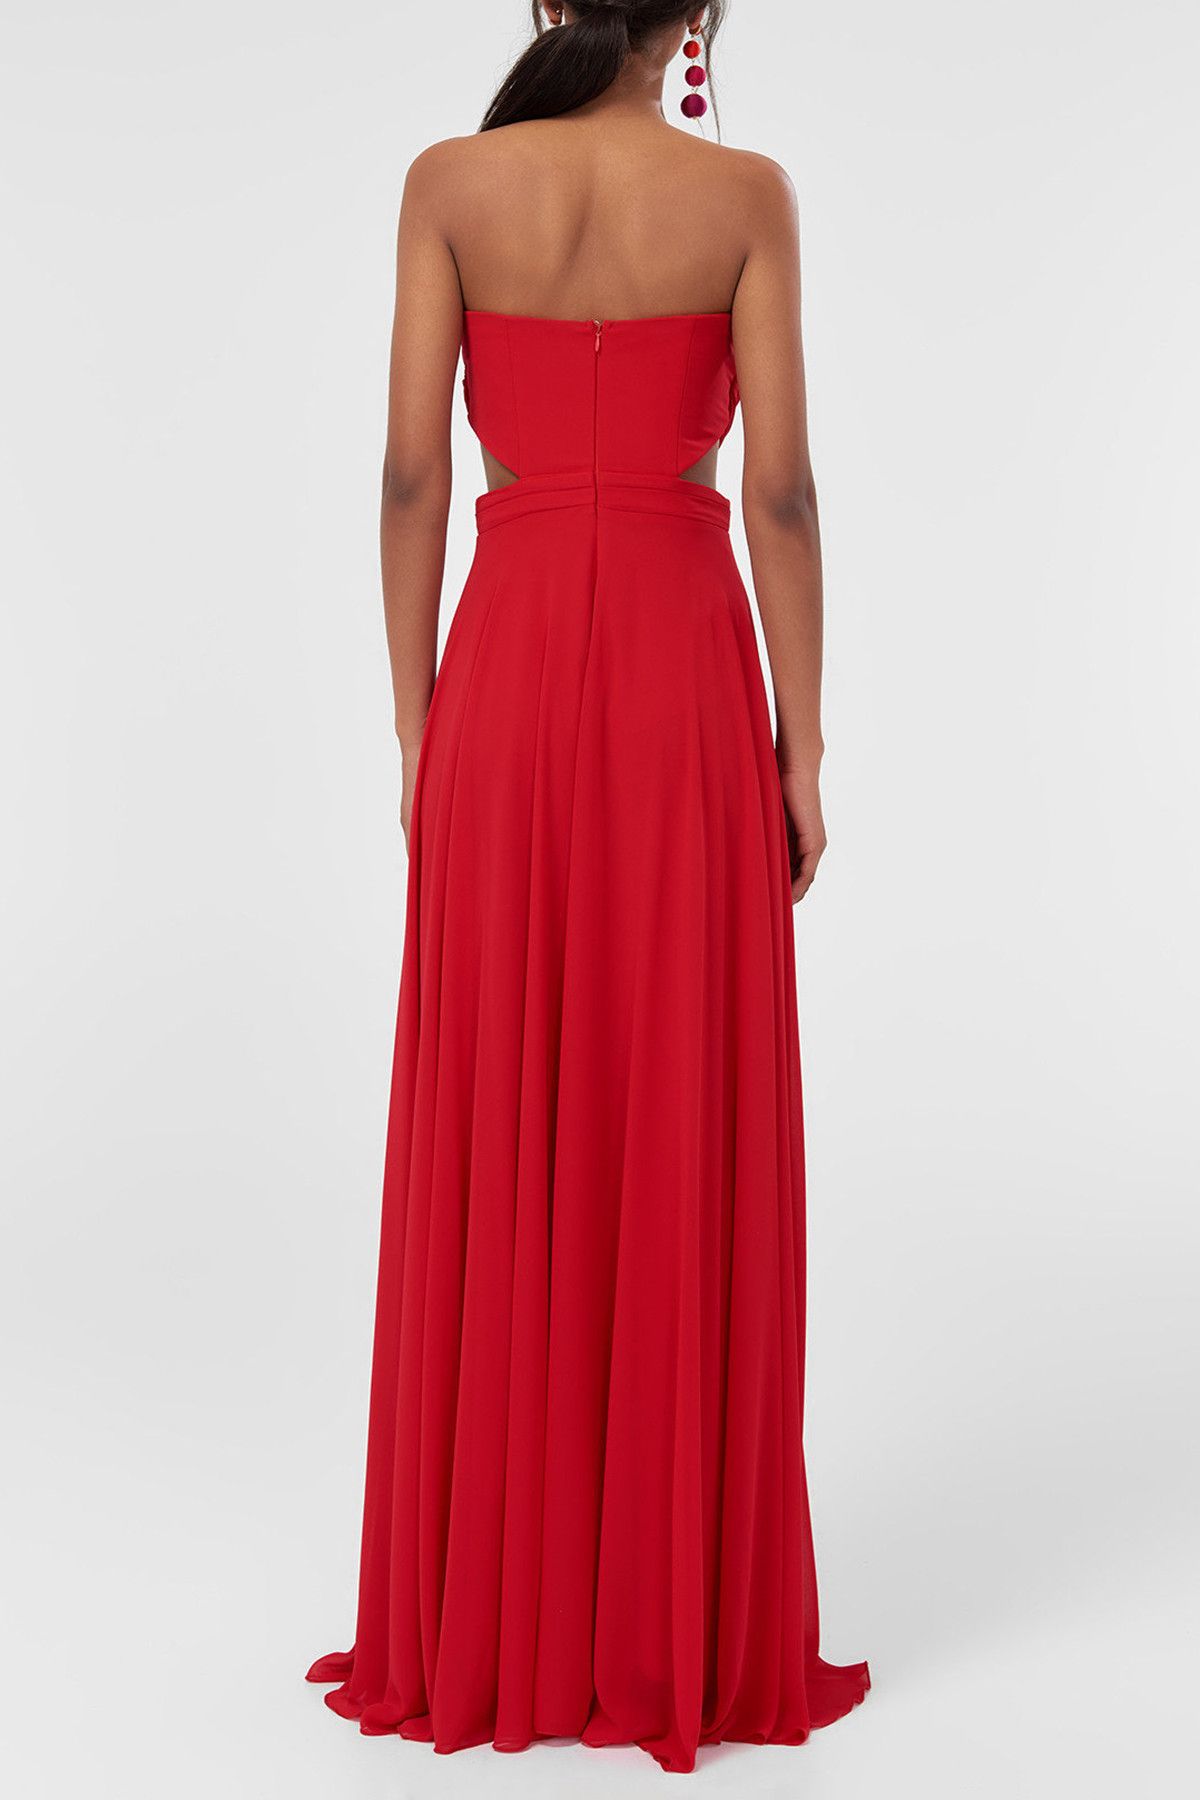 TRENDYOLMİLLA Kırmızı Çiçek Detaylı Abiye Elbise TPRSS18DE0081